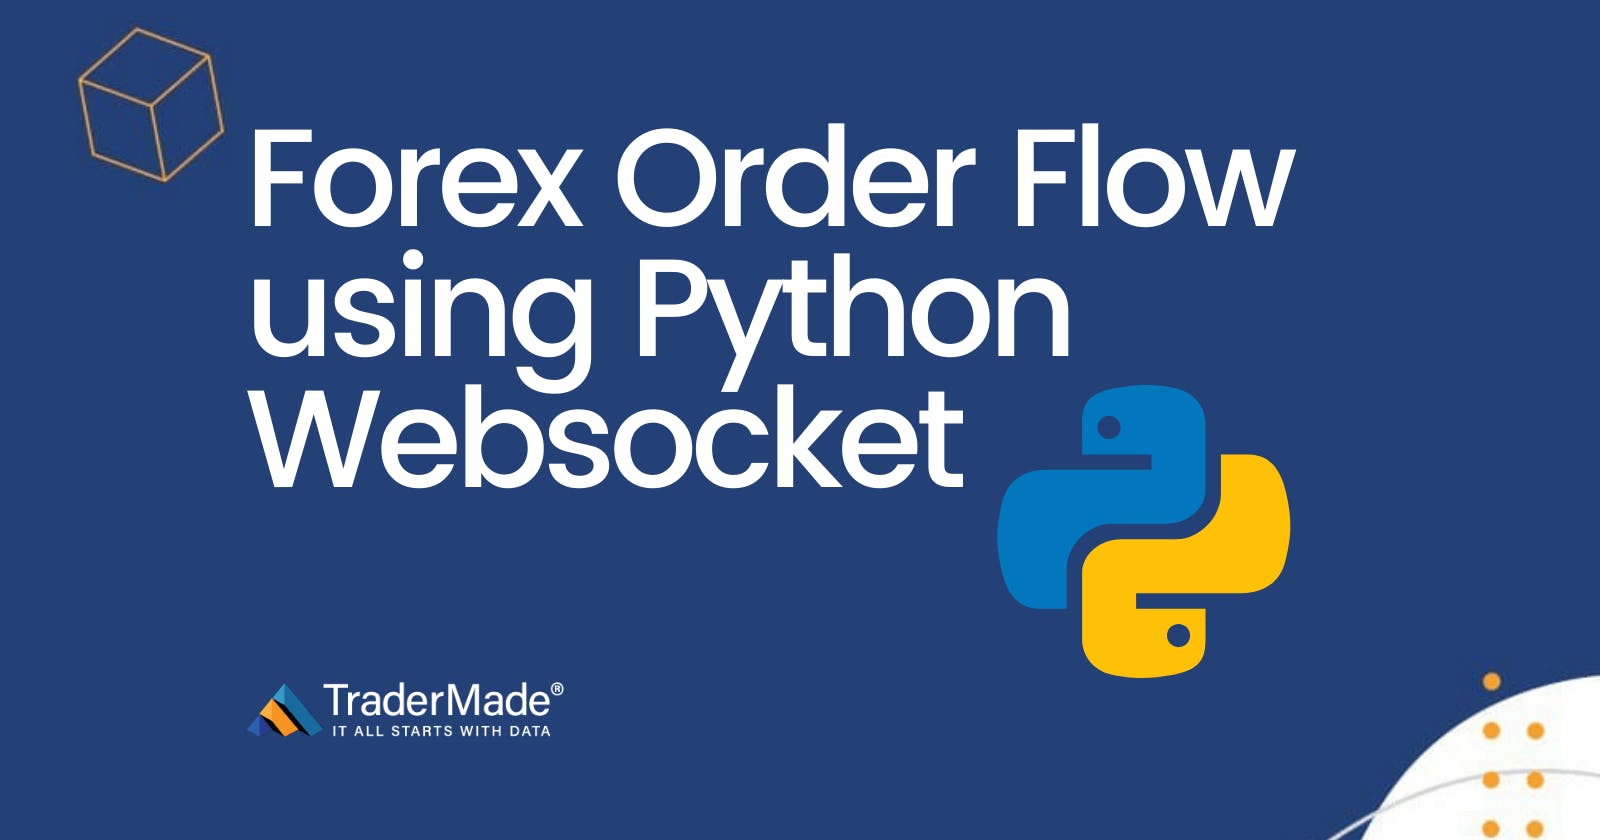 Python WebSocket Client - 
Real-Time Order Flow (Trade Tape)